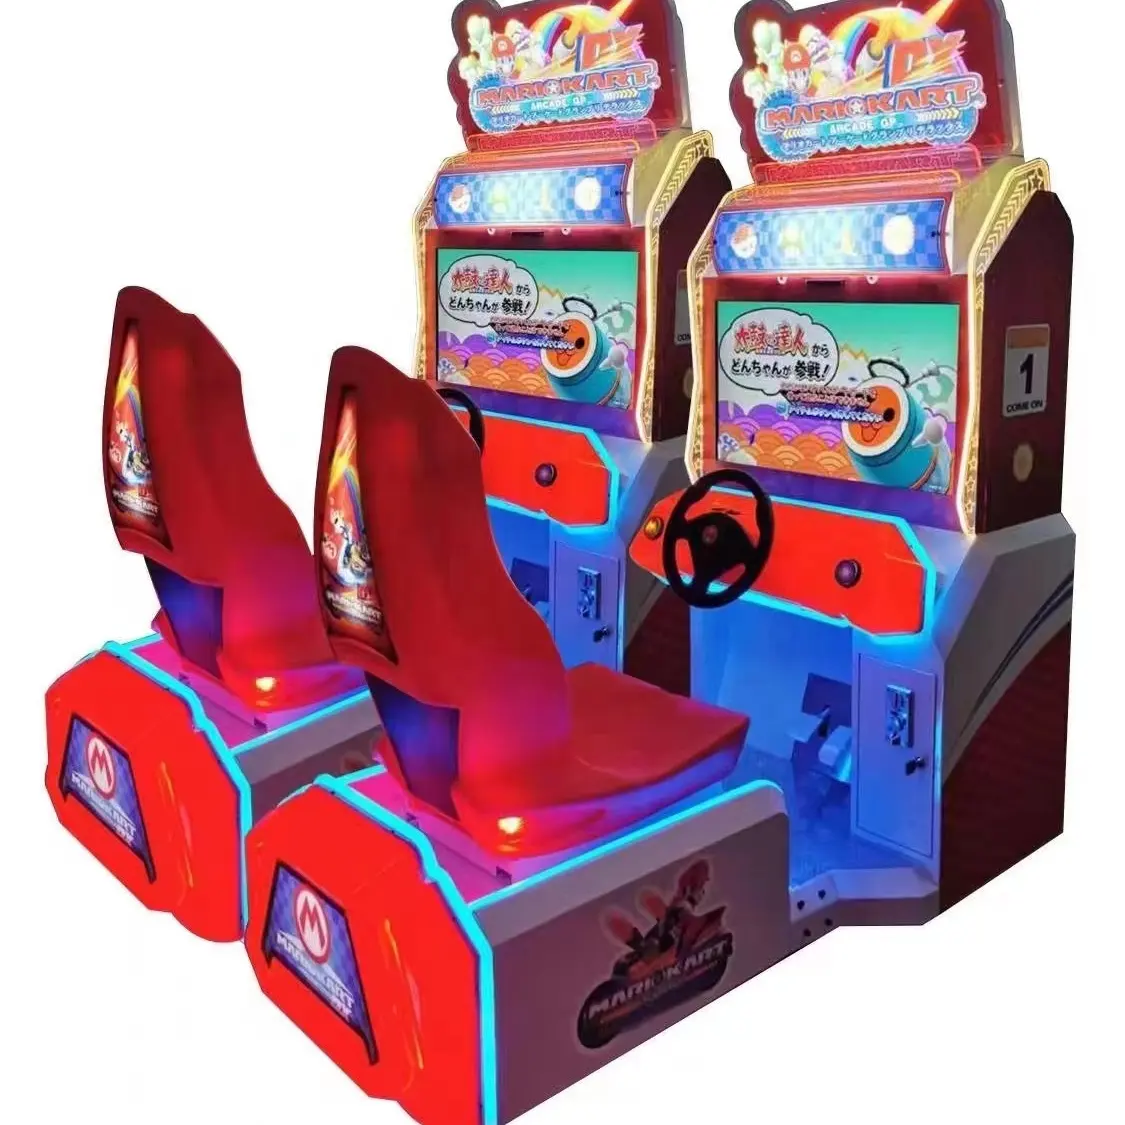 ماريو كارت 2 Gp الكلاسيكية الأكثر شعبية في أمريكا السيارات Arcade آلات محاكاة السيارات جهاز غرفة قيادة اللعبة